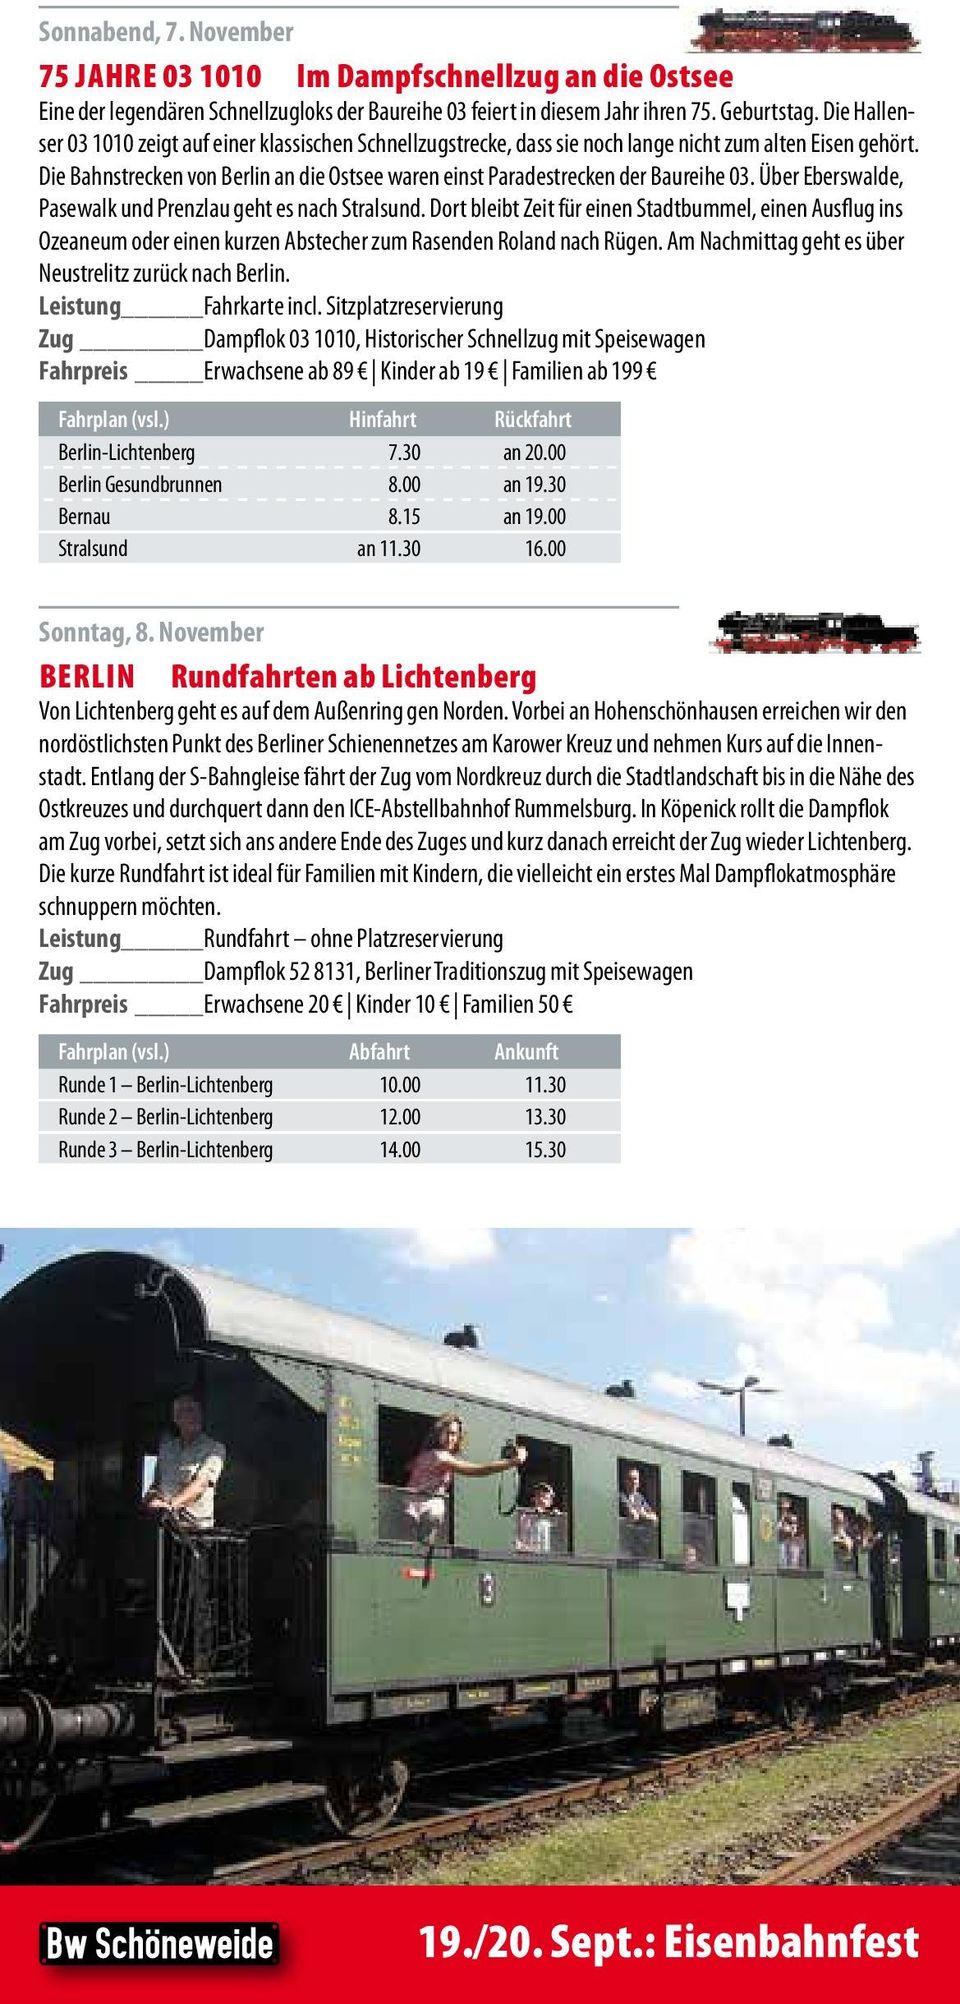 Die Bahnstrecken von Berlin an die Ostsee waren einst Paradestrecken der Baureihe 03. Über Eberswalde, Pasewalk und Prenzlau geht es nach Stralsund.